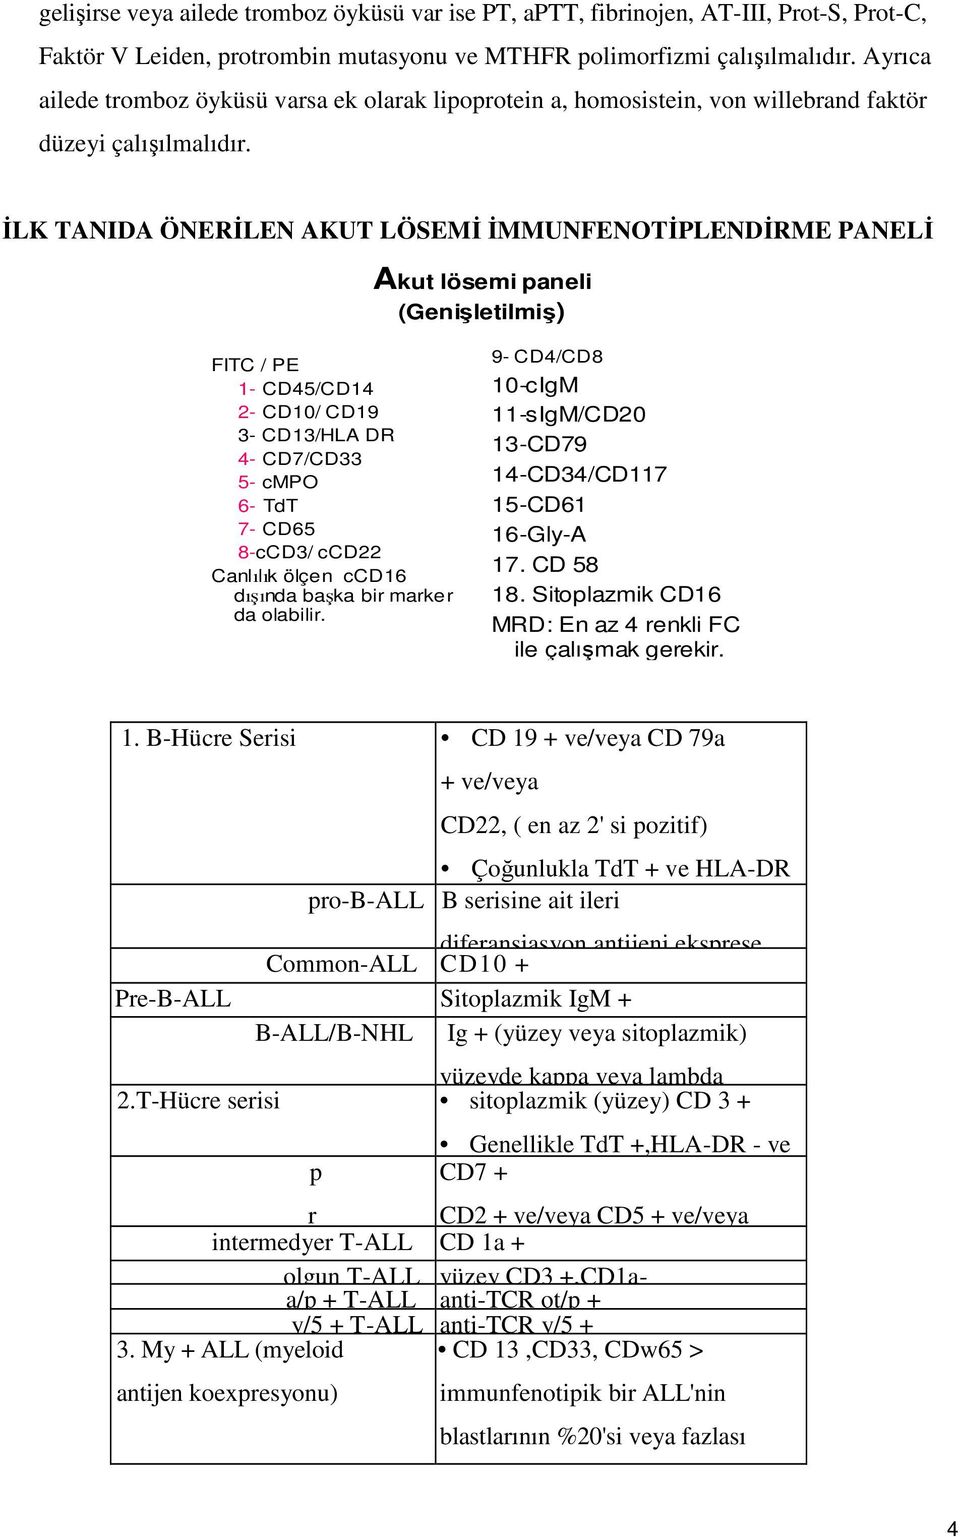 İLK TANIDA ÖNERİLEN AKUT LÖSEMİ İMMUNFENOTİPLENDİRME PANELİ Akut lösemi paneli (Genişletilmiş) FITC / PE 1- CD45/CD14 2- CD10/ CD19 3- CD13/HLA DR 4- CD7/CD33 5- cmpo 6- TdT 7- CD65 8-cCD3/ ccd22